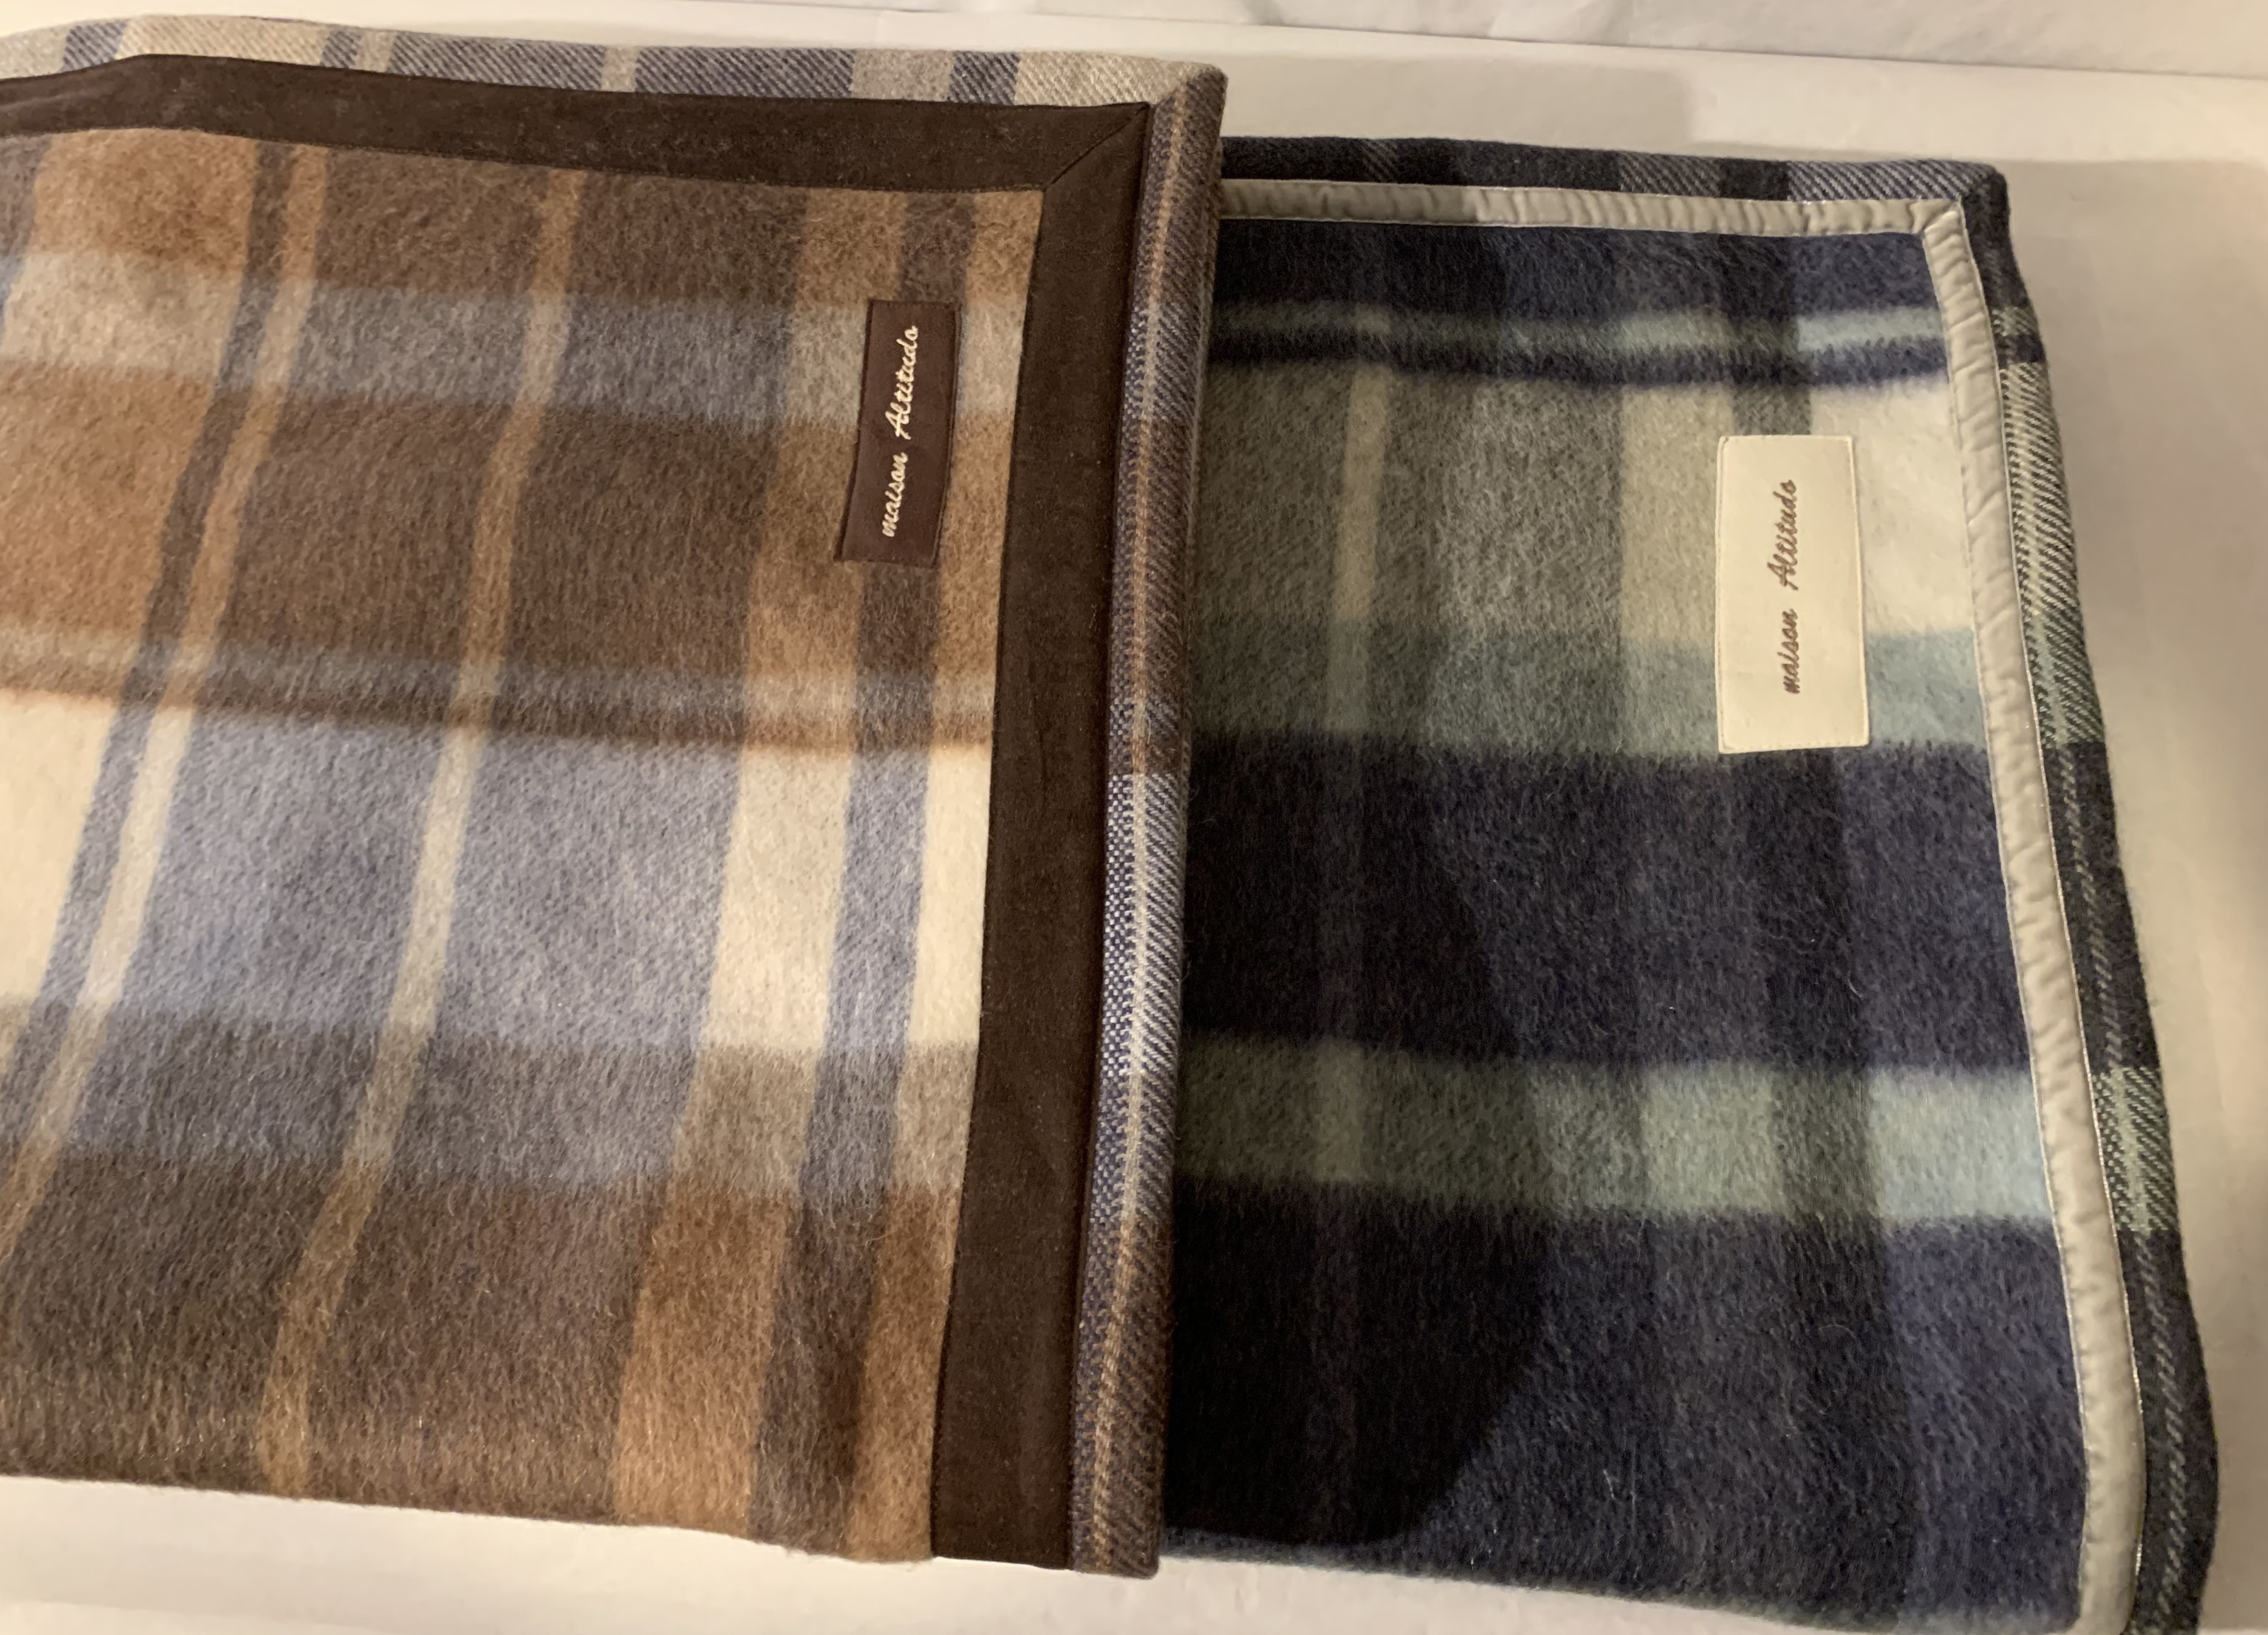 soffici coperte di lana a quadri, toni del marrone beige e del blu verde